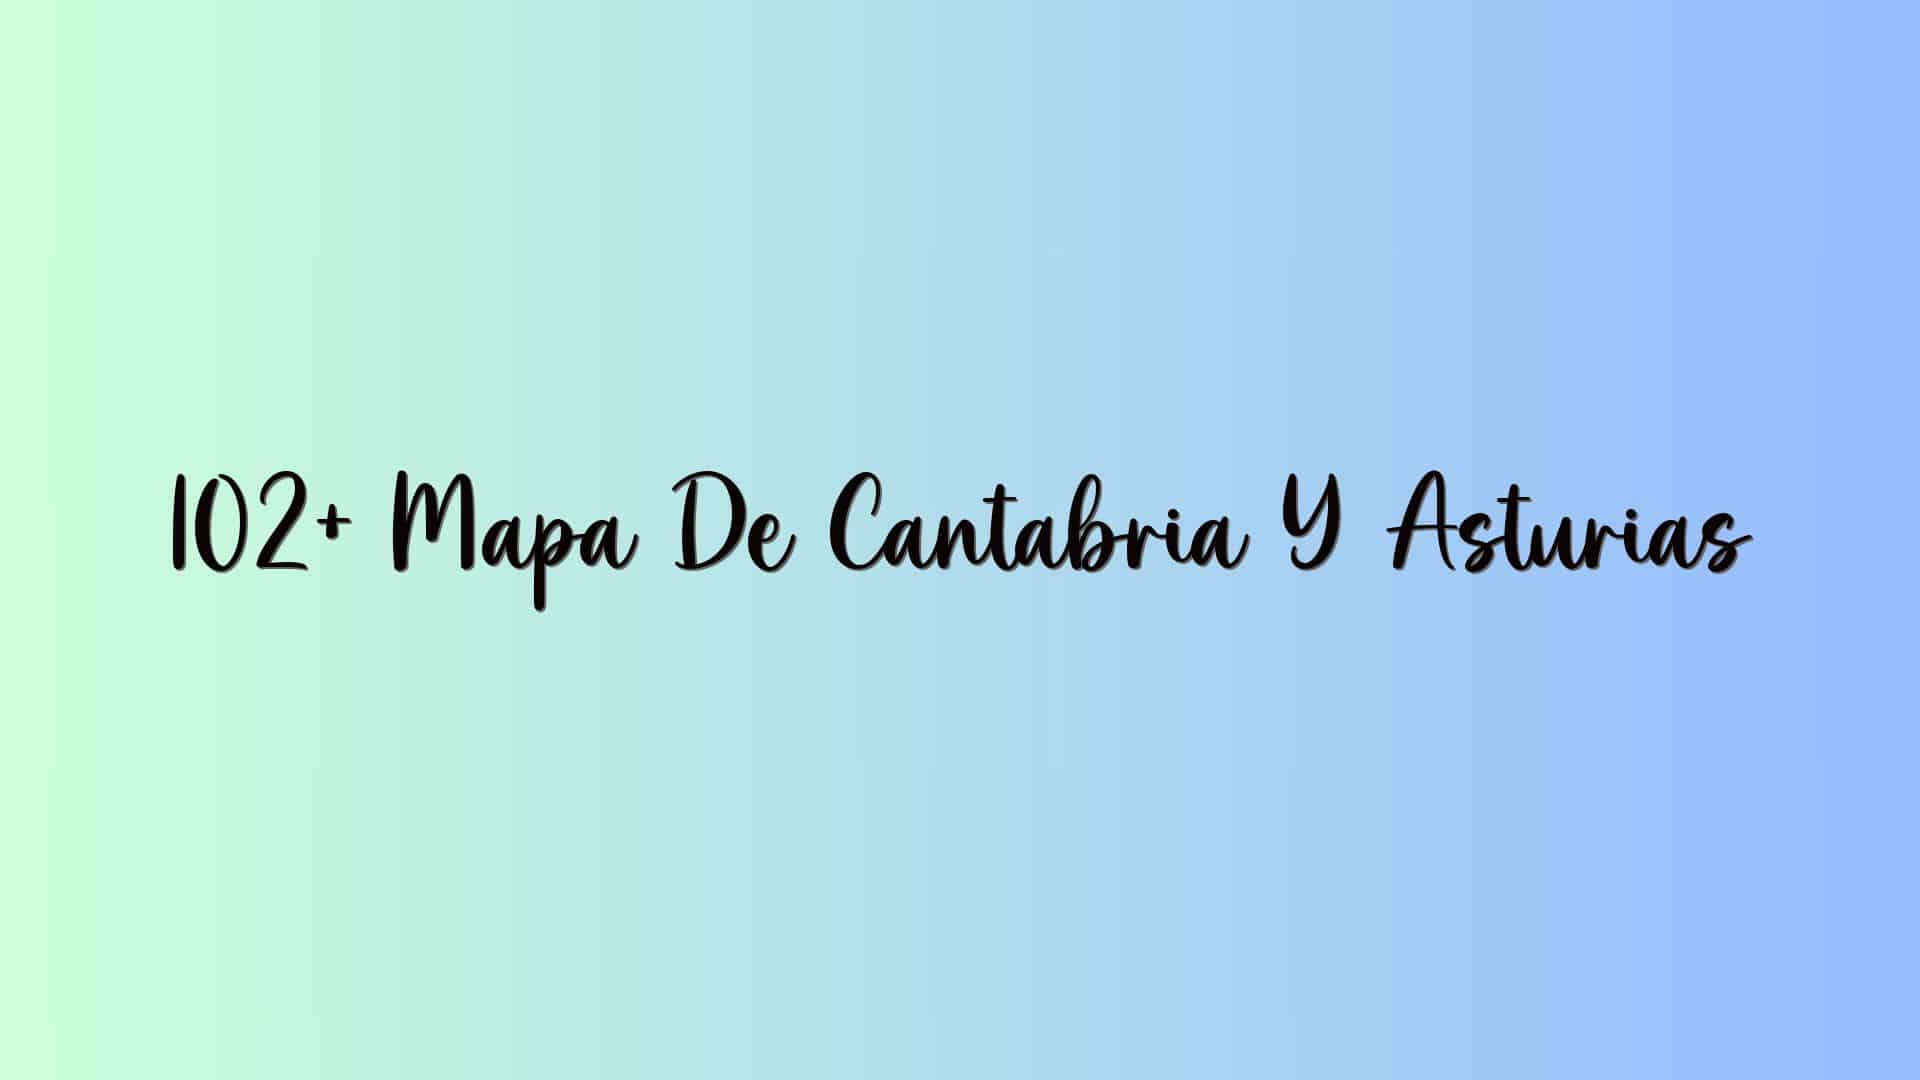 102+ Mapa De Cantabria Y Asturias